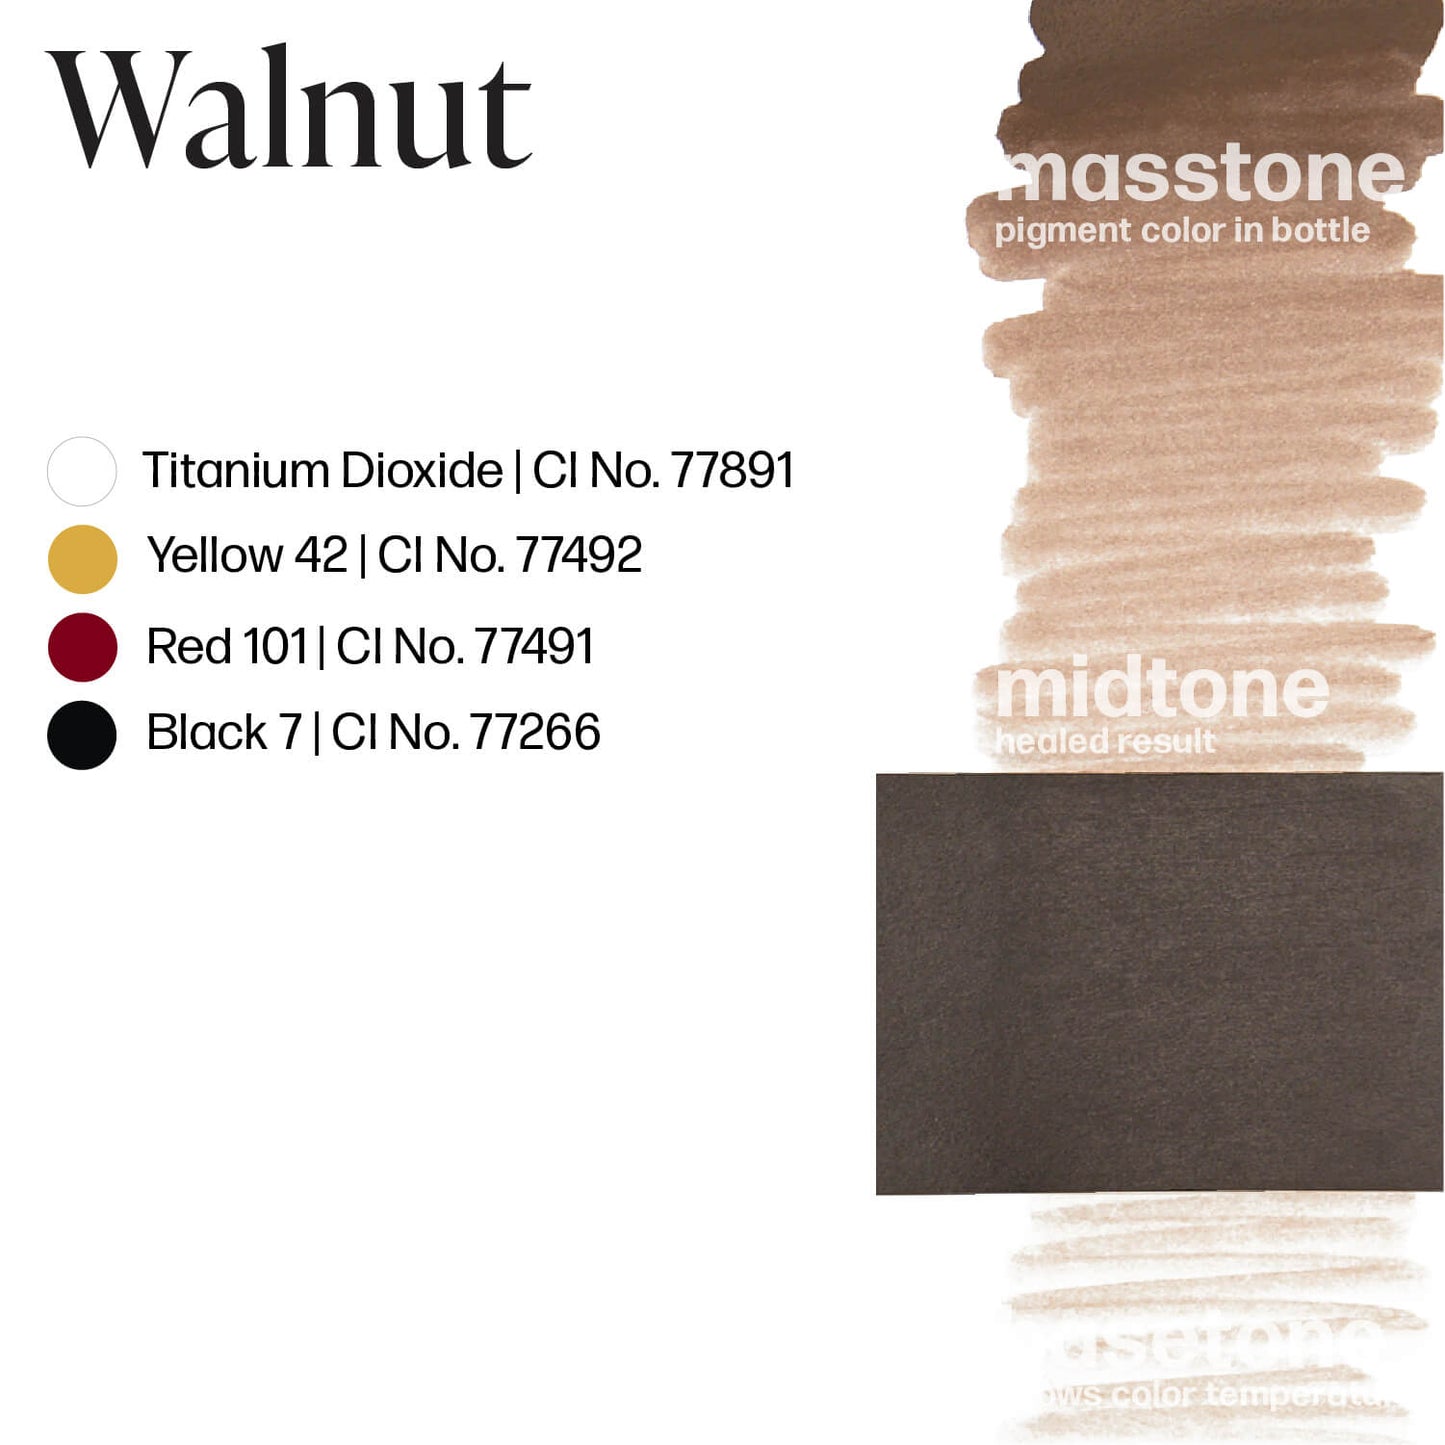 Perma Blend Walnut Brow Ink Drawdown Masstone Midtone Basetone